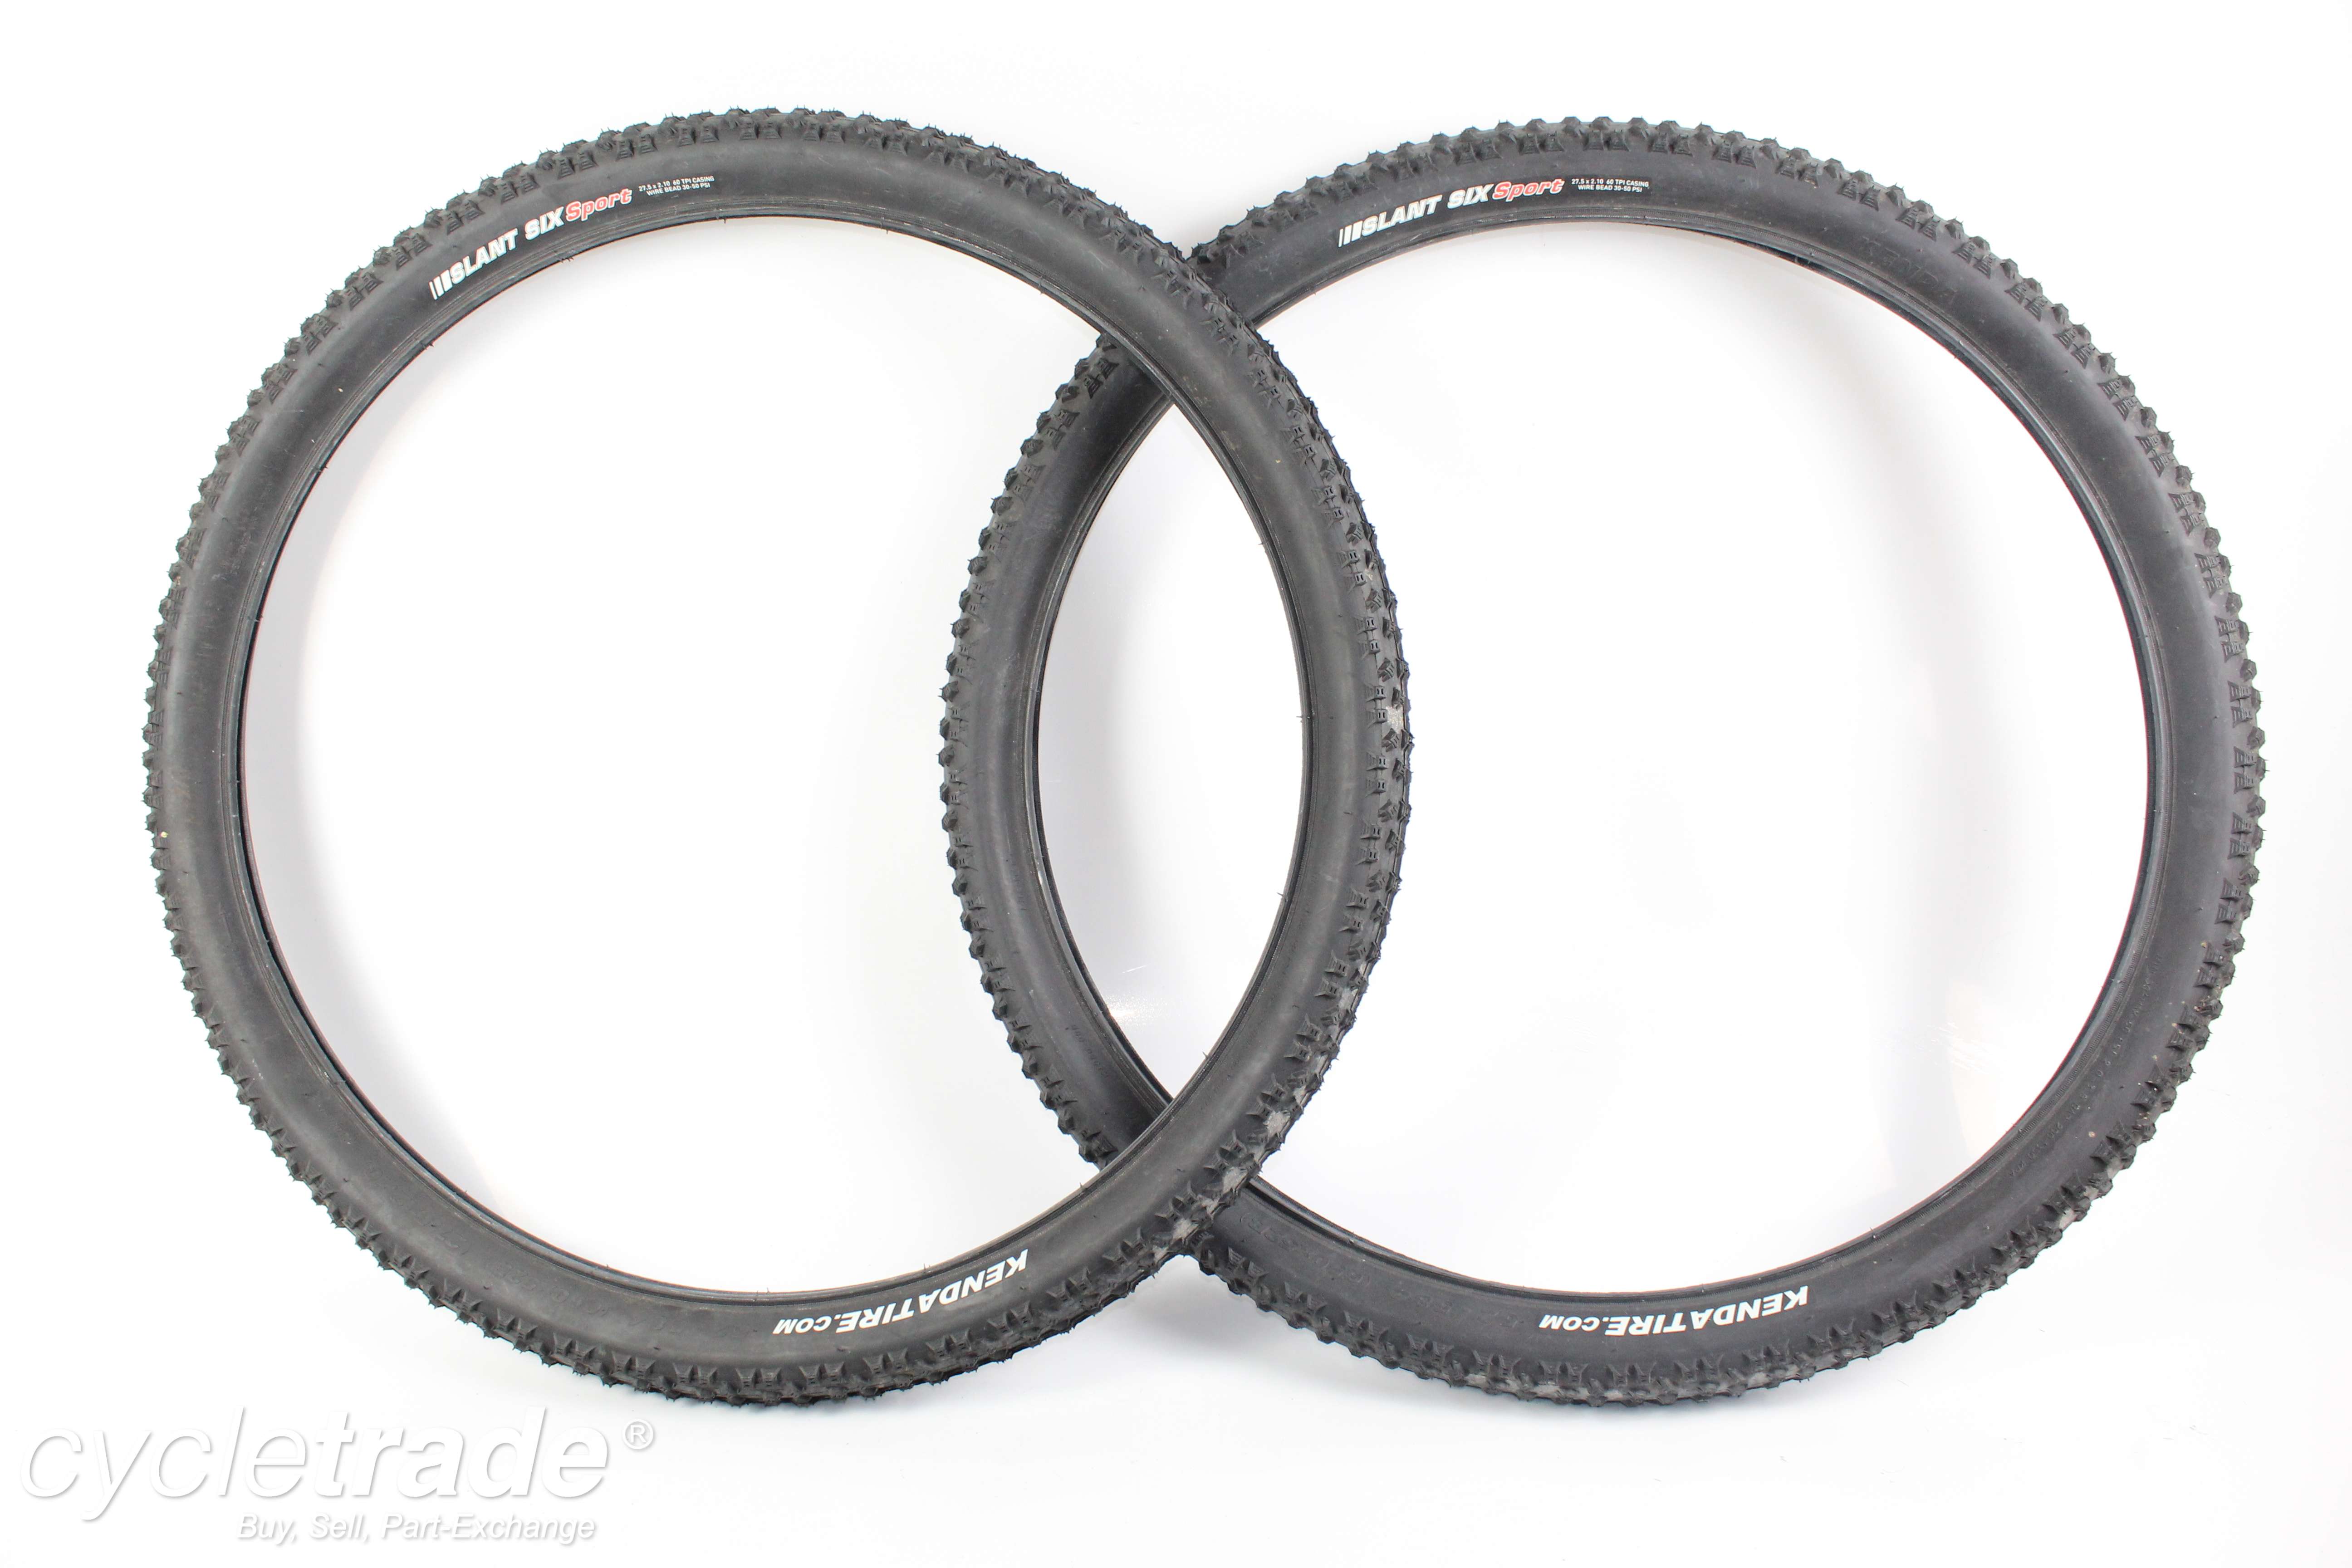 Ex-Demo Tyreset- Kenda Tyre 27.5X2.10 Front and Back- Grade B+